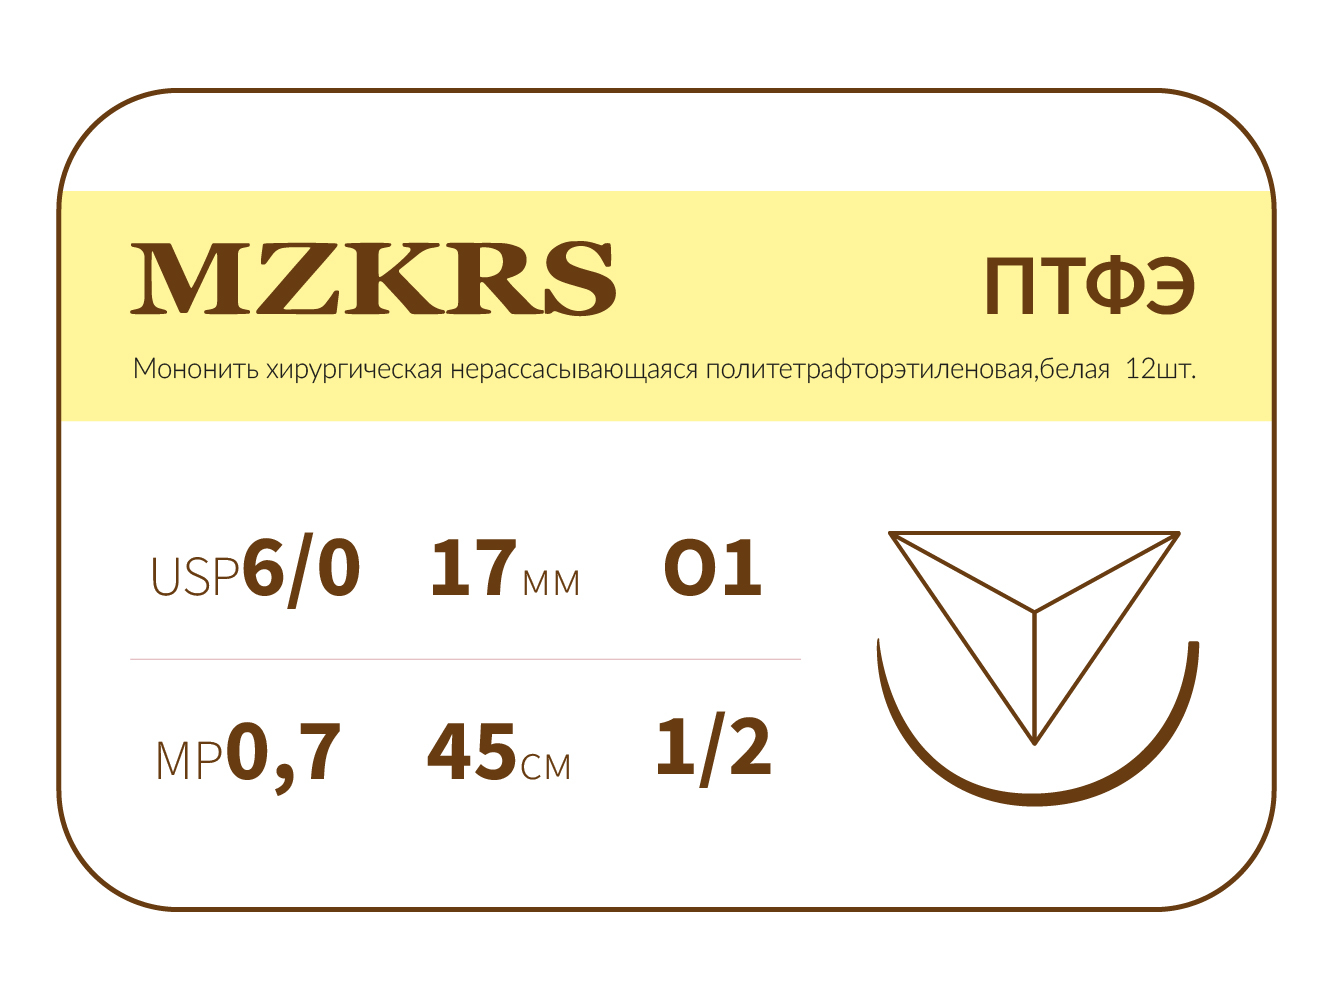 1712О1-Premium 6/0 (0.7) 45 ПТФЭ хирургическая нить политетрафторэтиленовая, MZKRS (Россия)